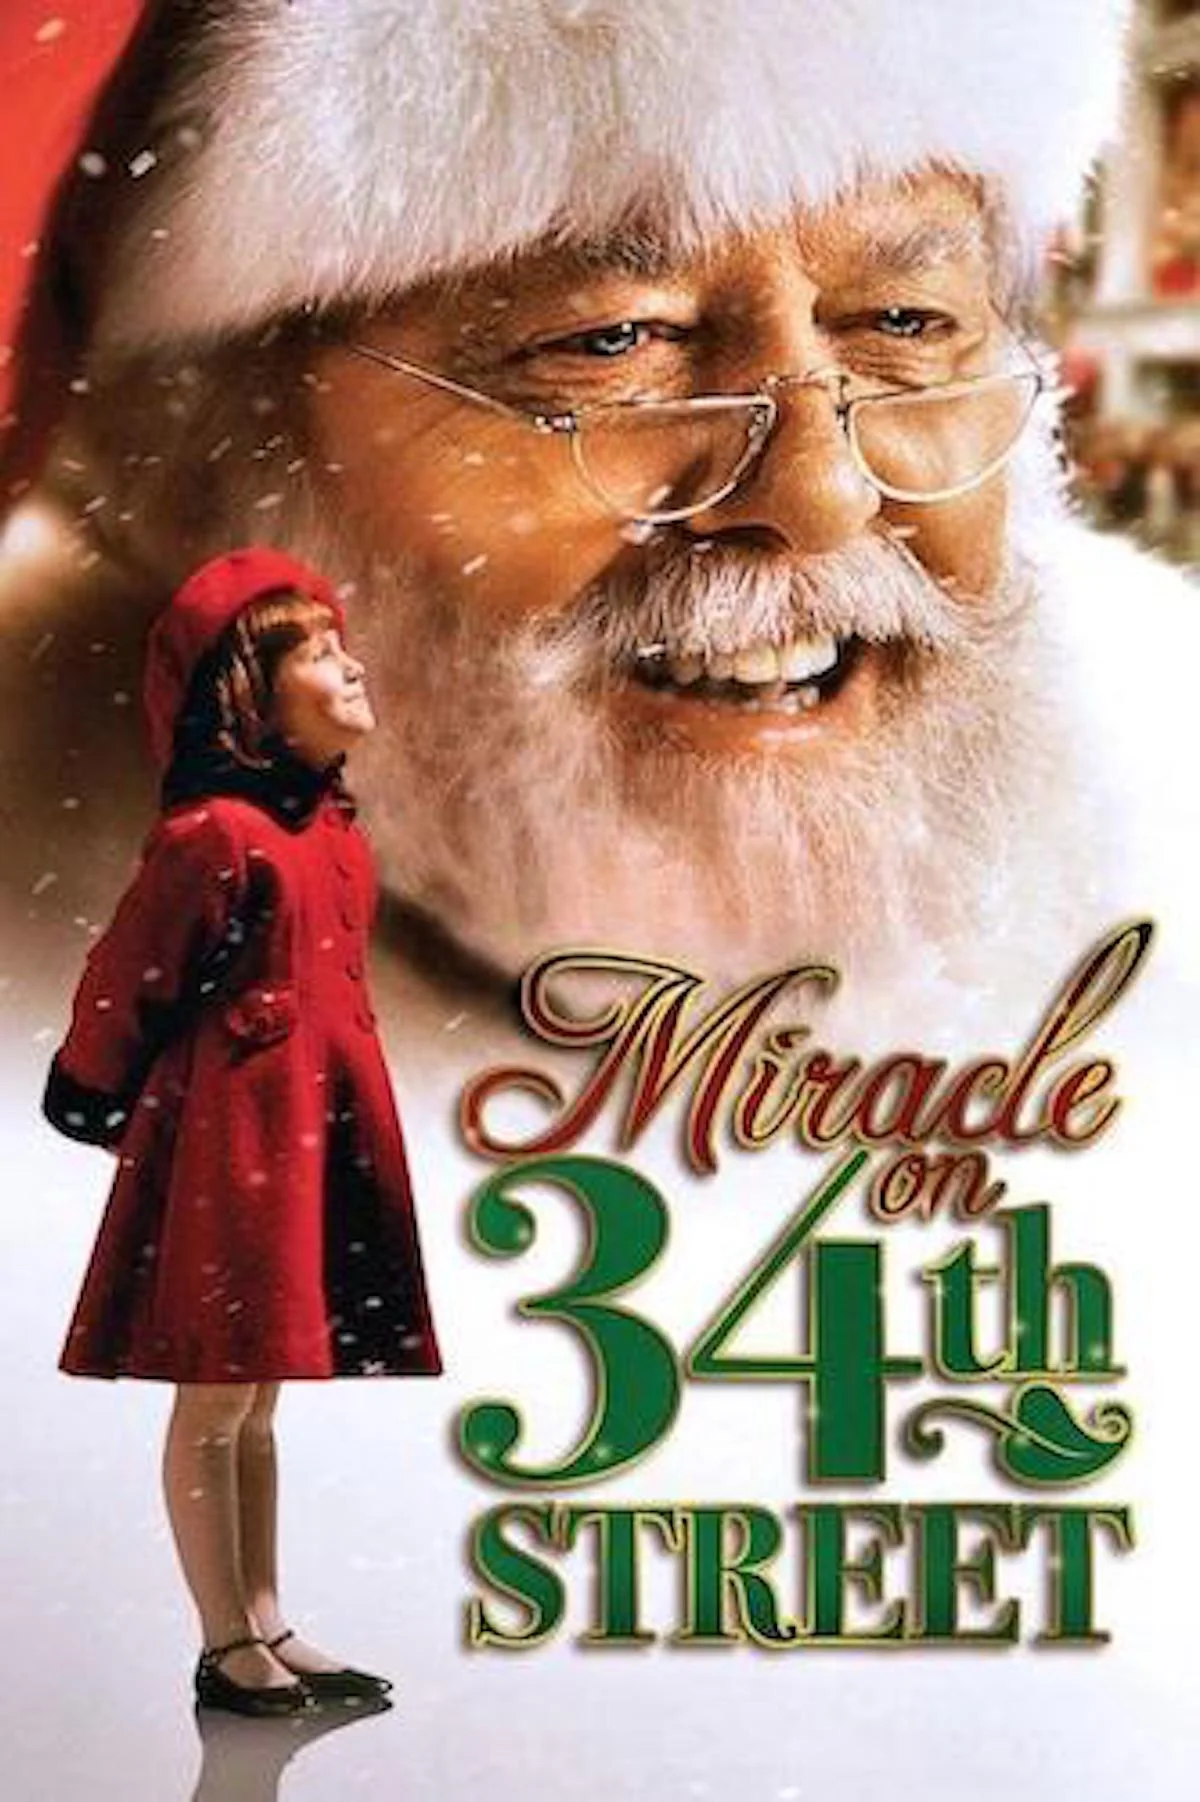 《34街的奇蹟 Miracle on 34th Street》